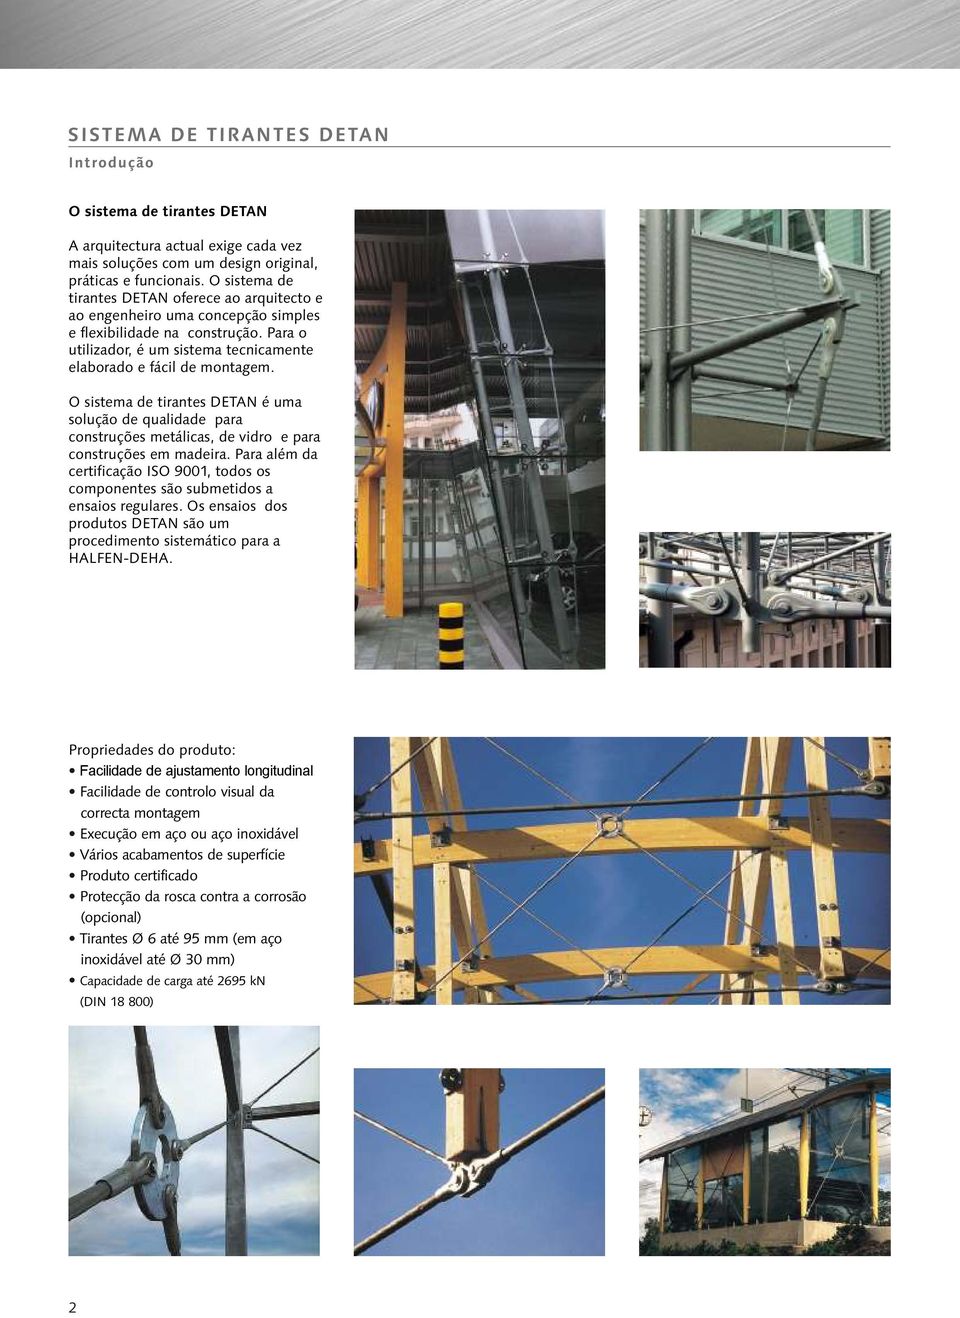 O sistema de tirantes DETAN é uma solução de qualidade para construções metálicas, de vidro e para construções em madeira.